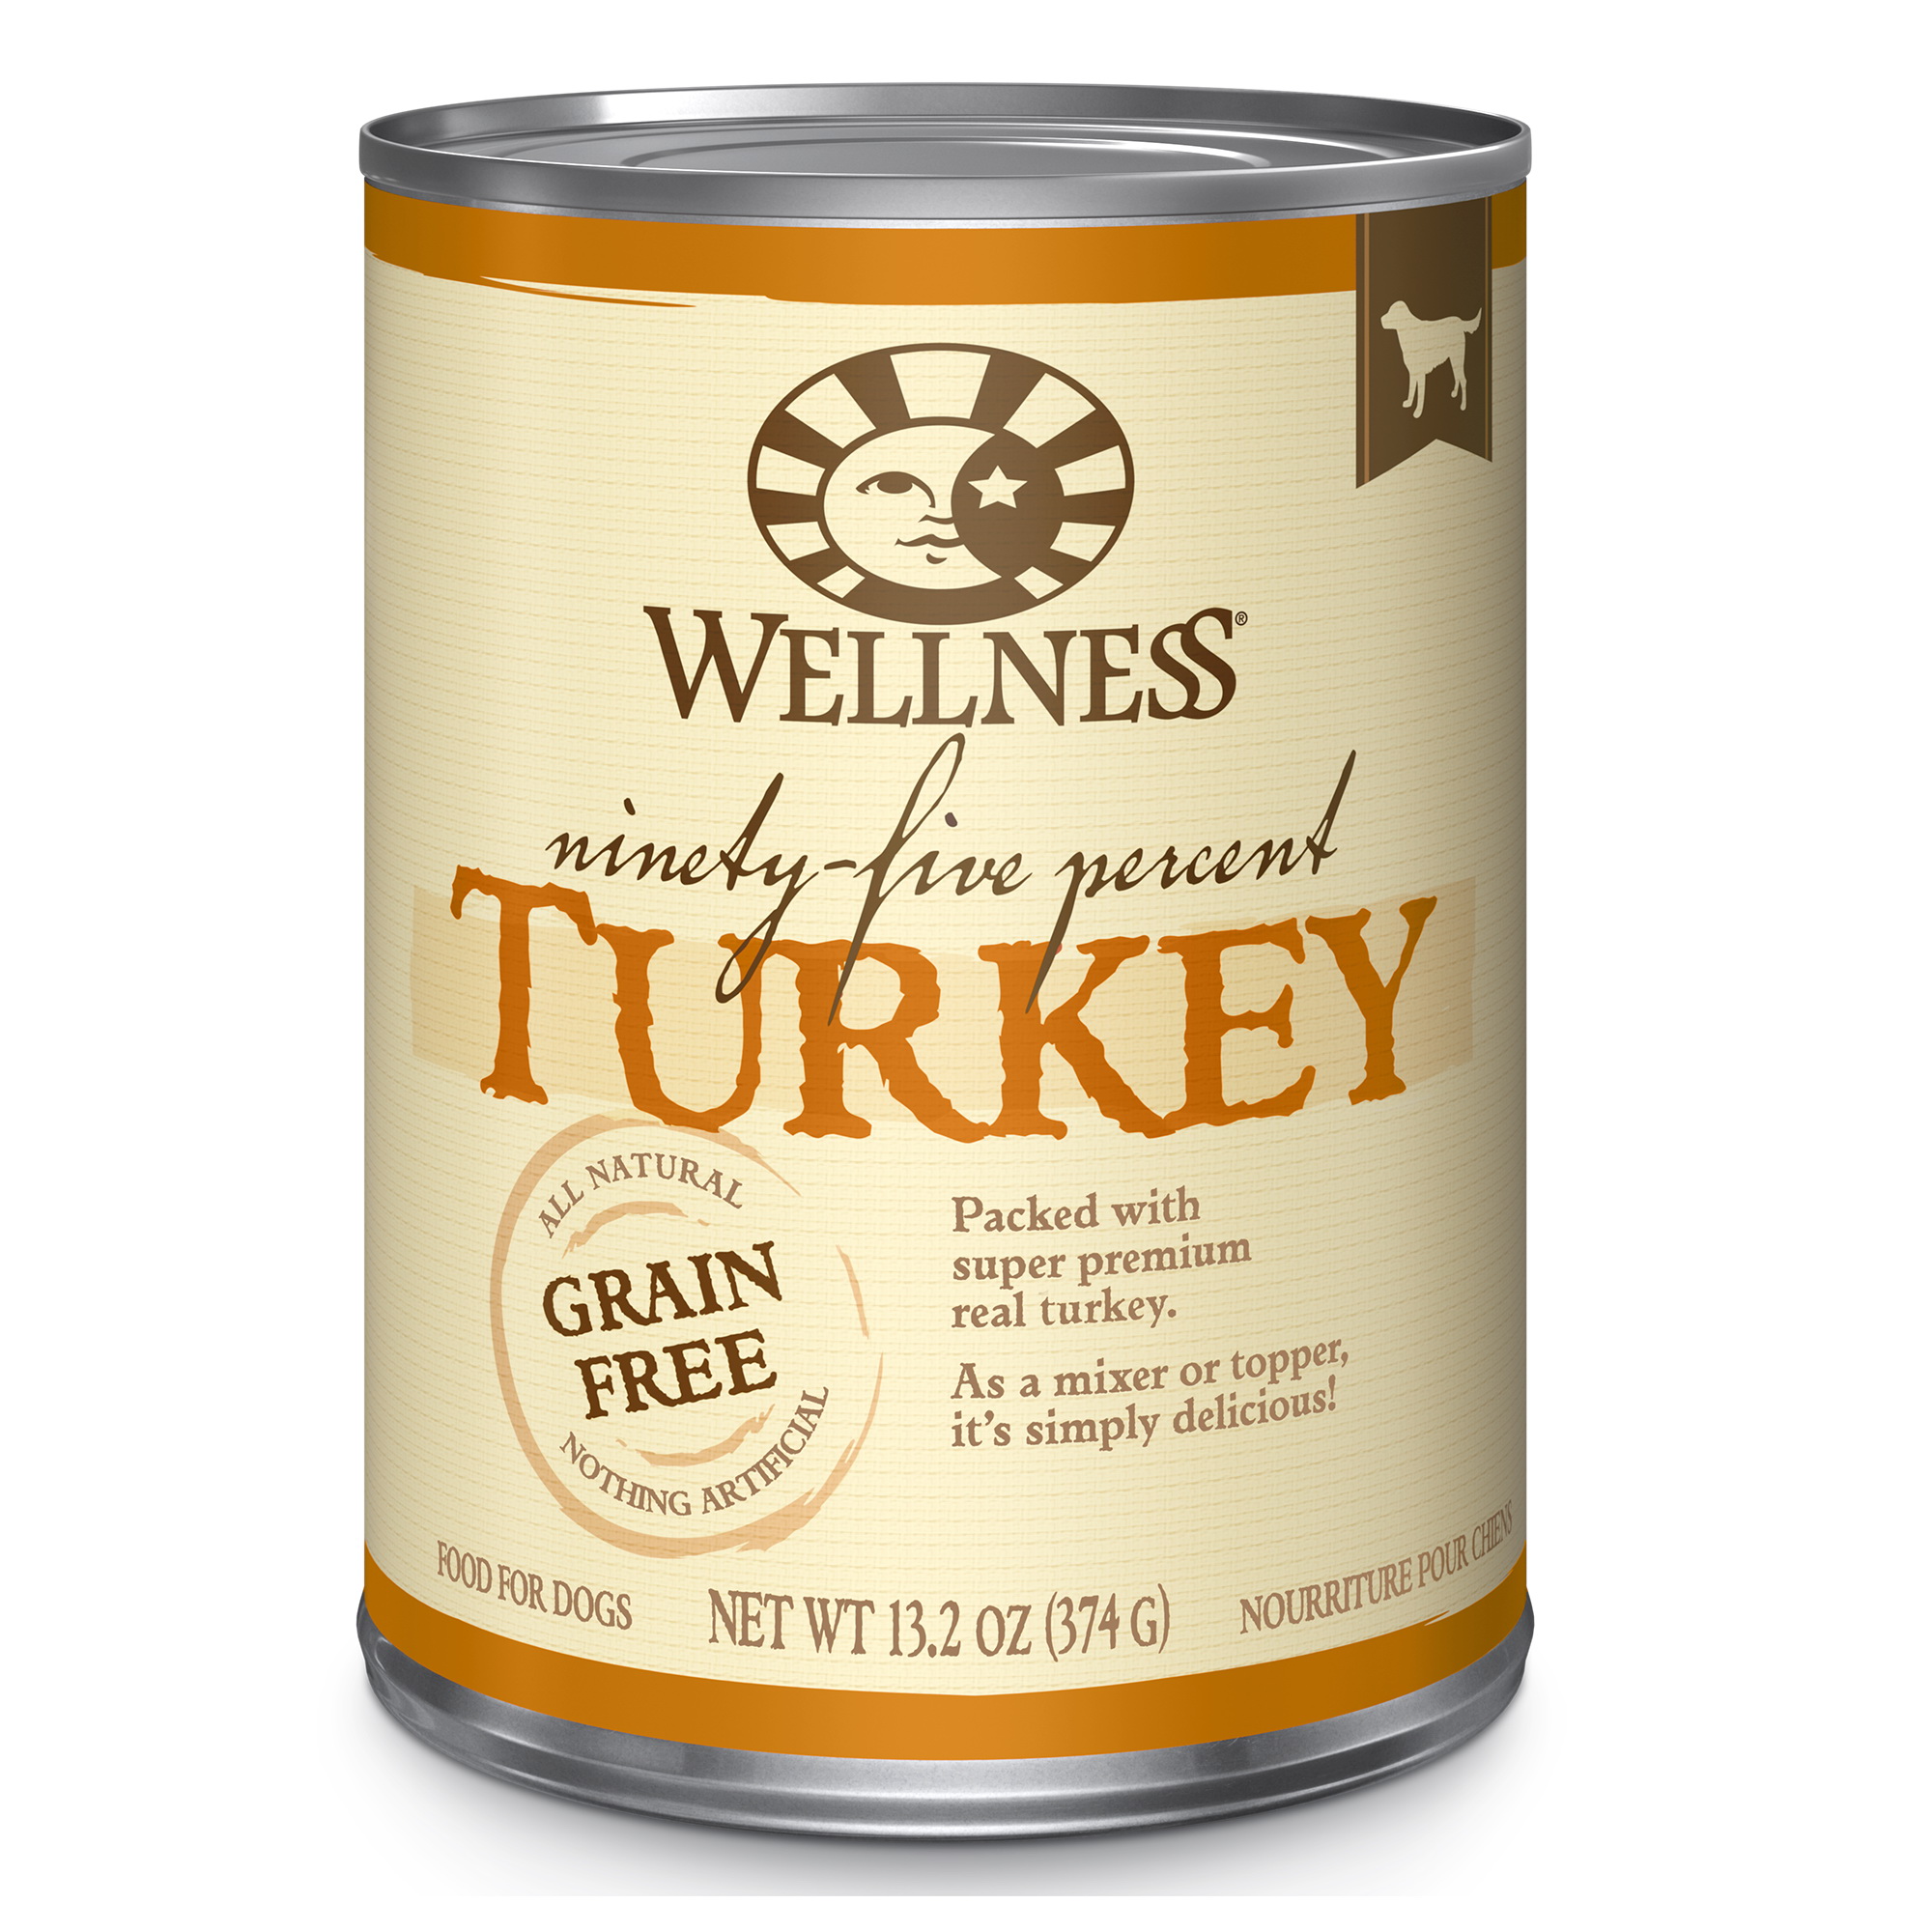 Wellness 4894537 Dog Food, Turkey Flavor, 13.2 oz Can - 1